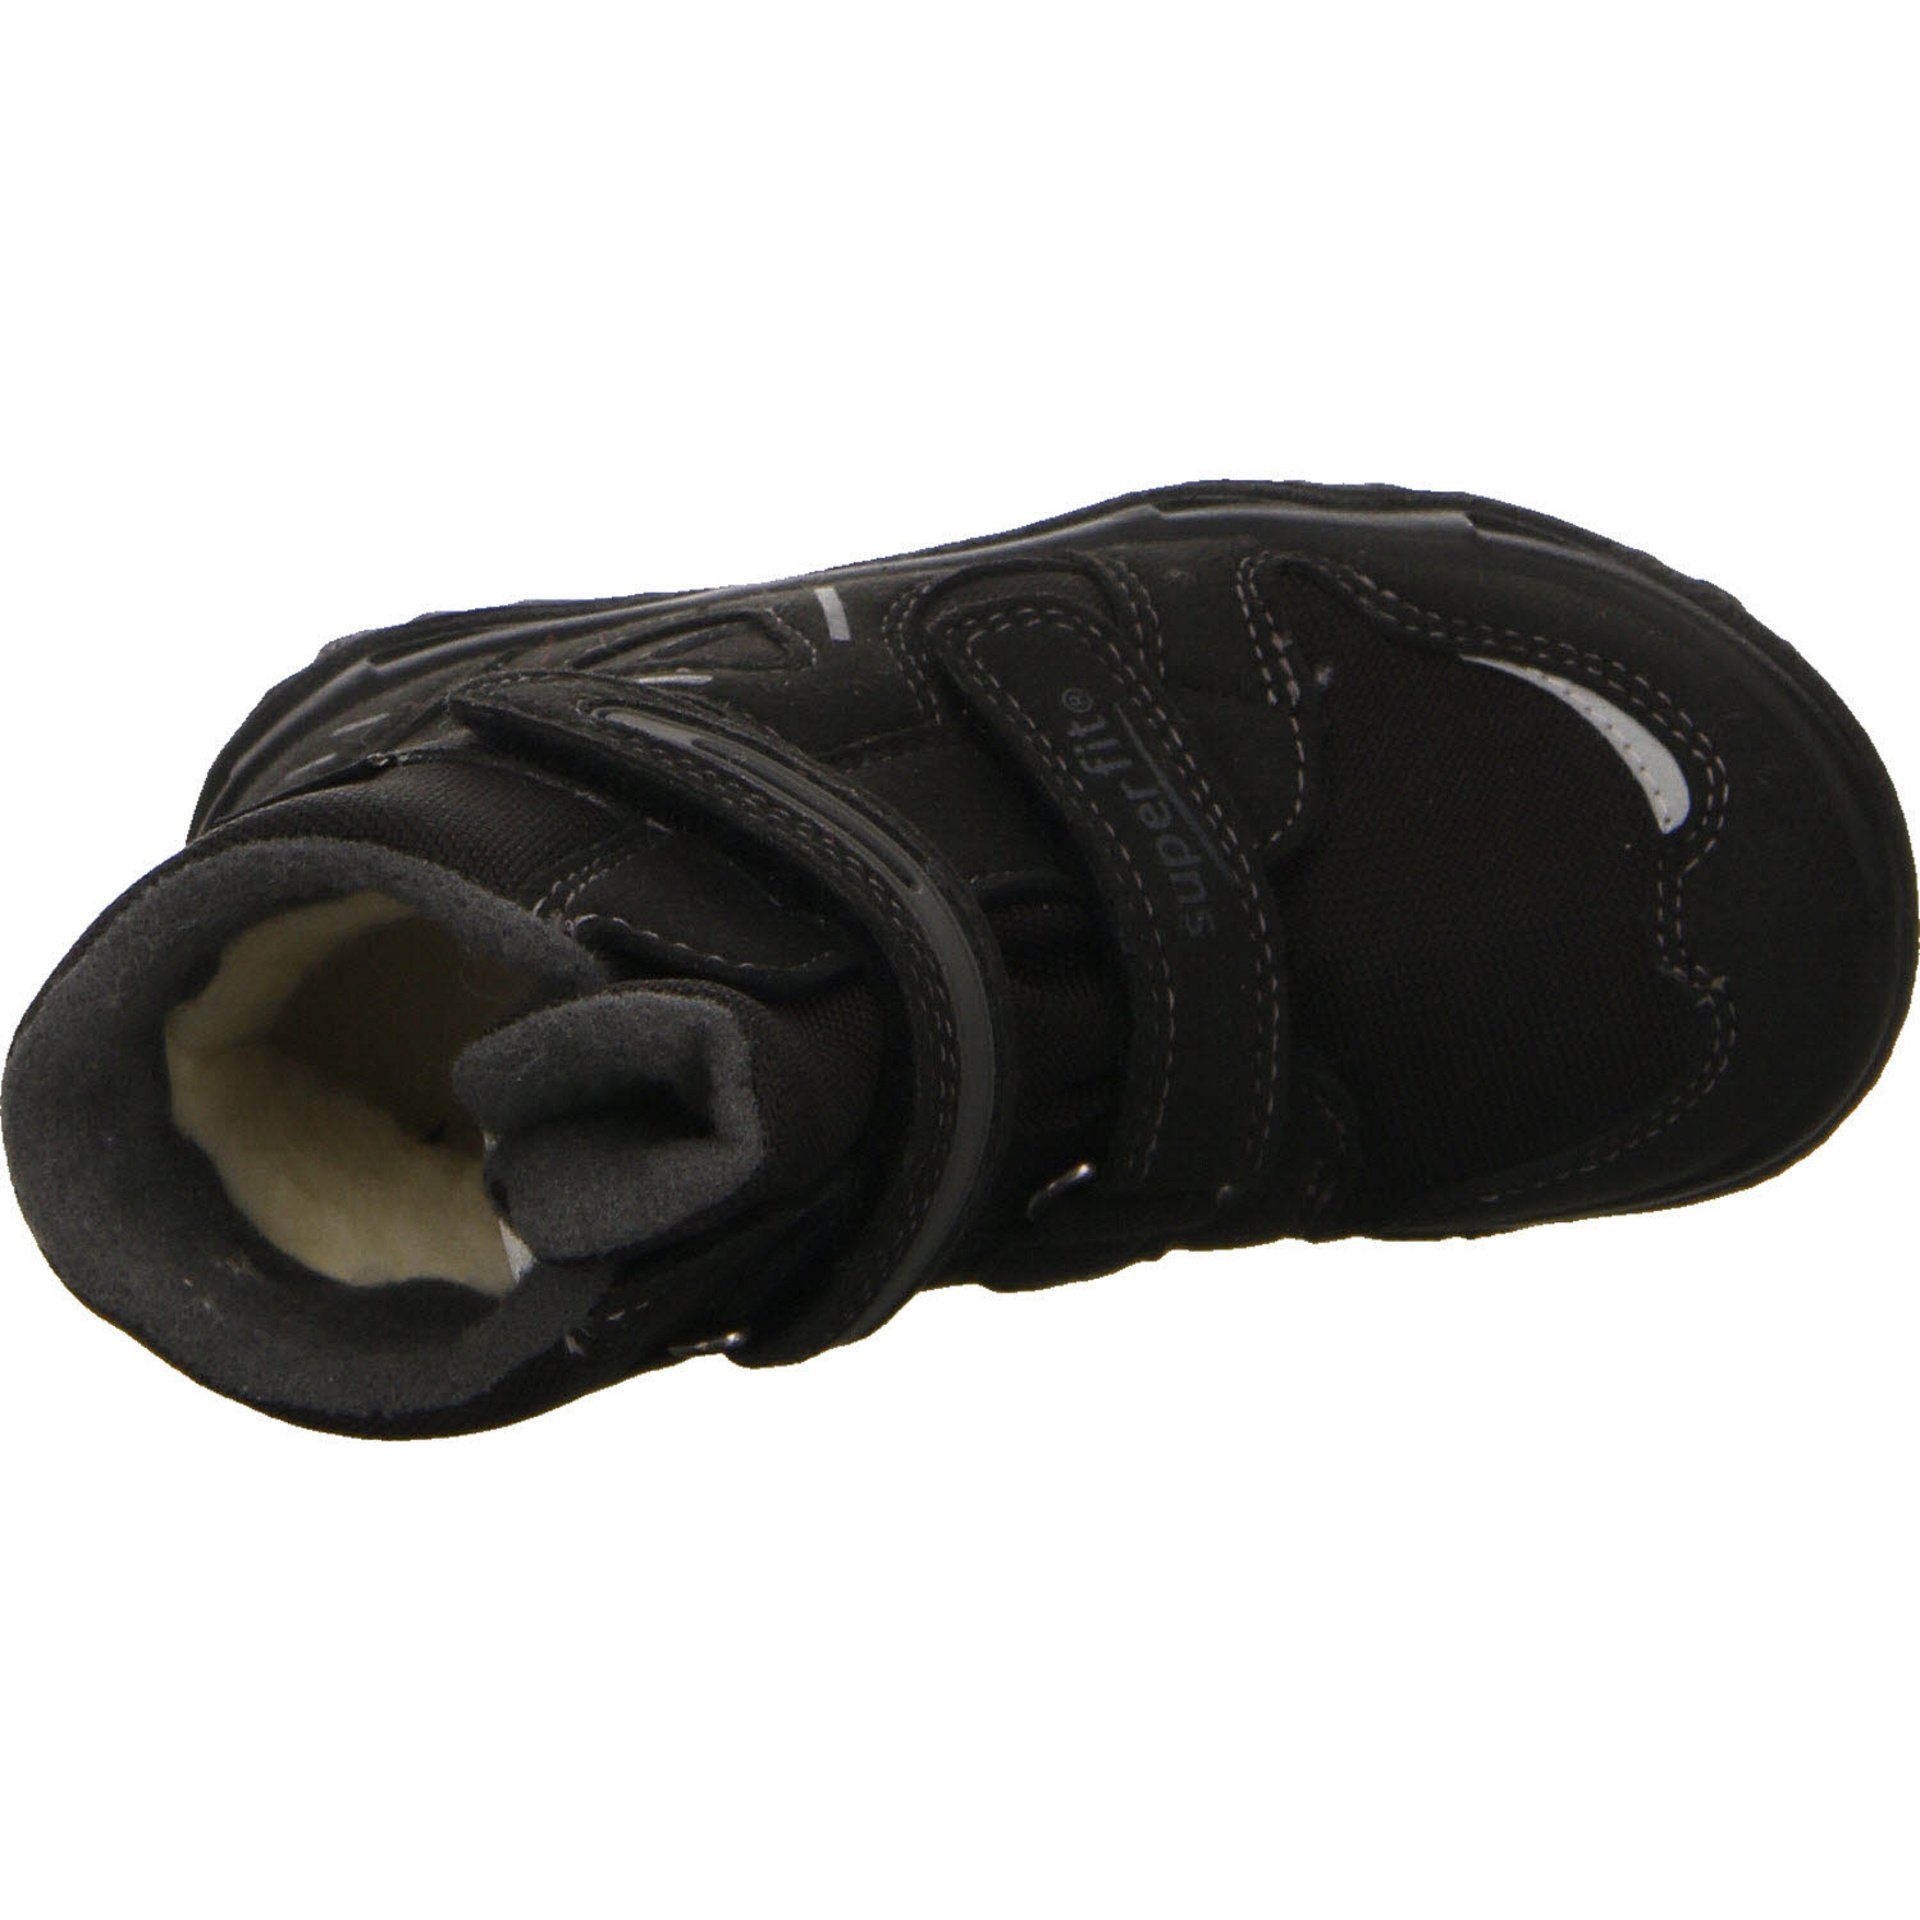 Stiefel Gore-Tex schwarz Superfit Boots grau Stiefel Schuhe Synthetikkombination 2 Jungen Husky